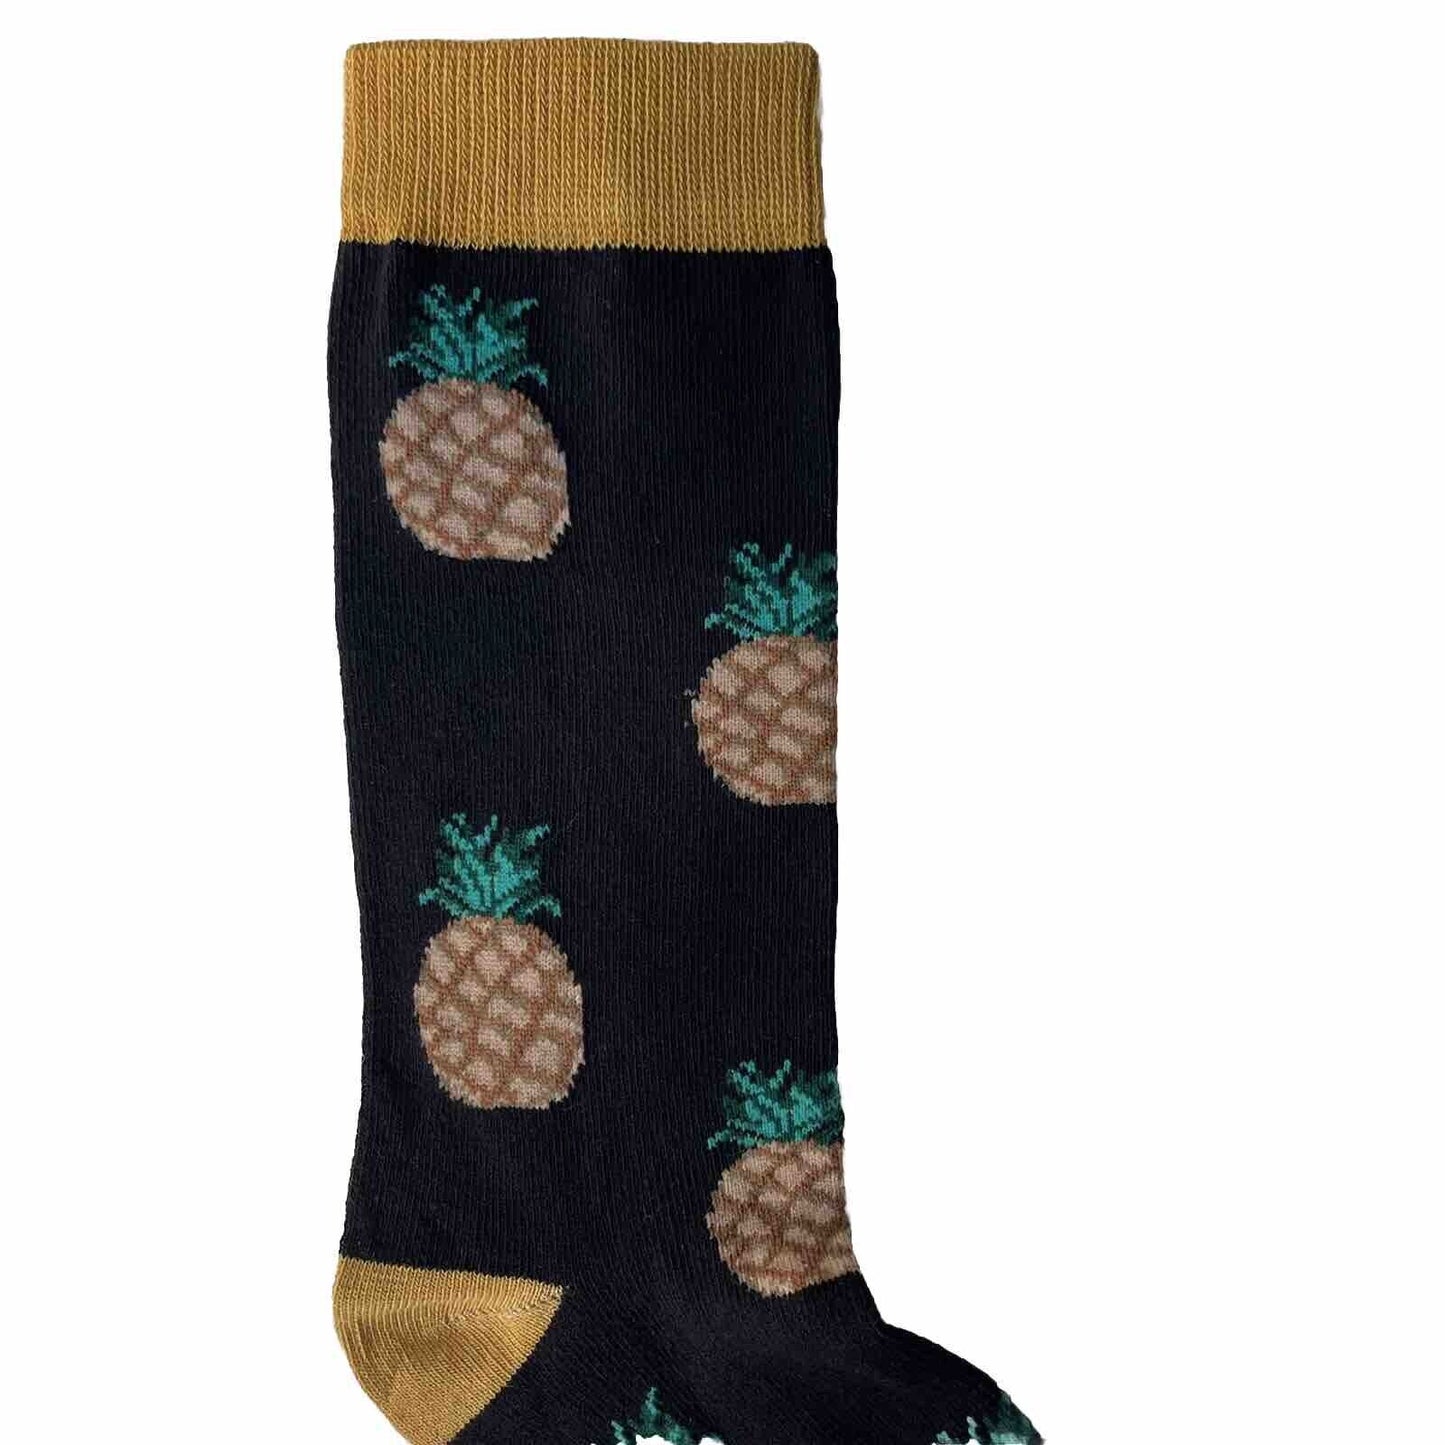 Novelty Socks Pineapple Top